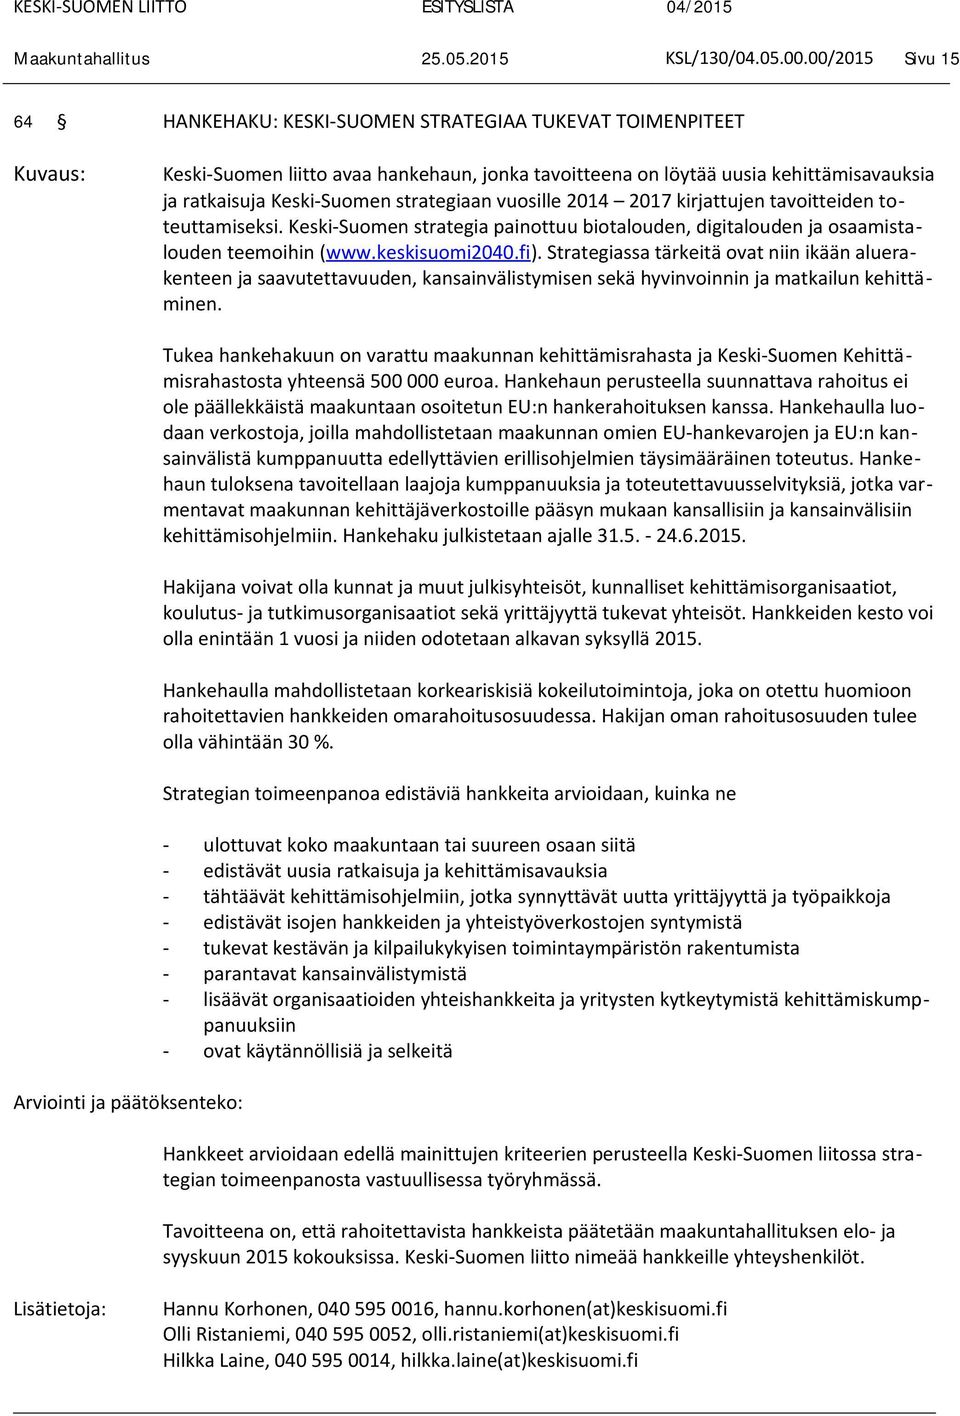 strategiaan vuosille 2014 2017 kirjattujen tavoitteiden toteuttamiseksi. Keski-Suomen strategia painottuu biotalouden, digitalouden ja osaamistalouden teemoihin (www.keskisuomi2040.fi).